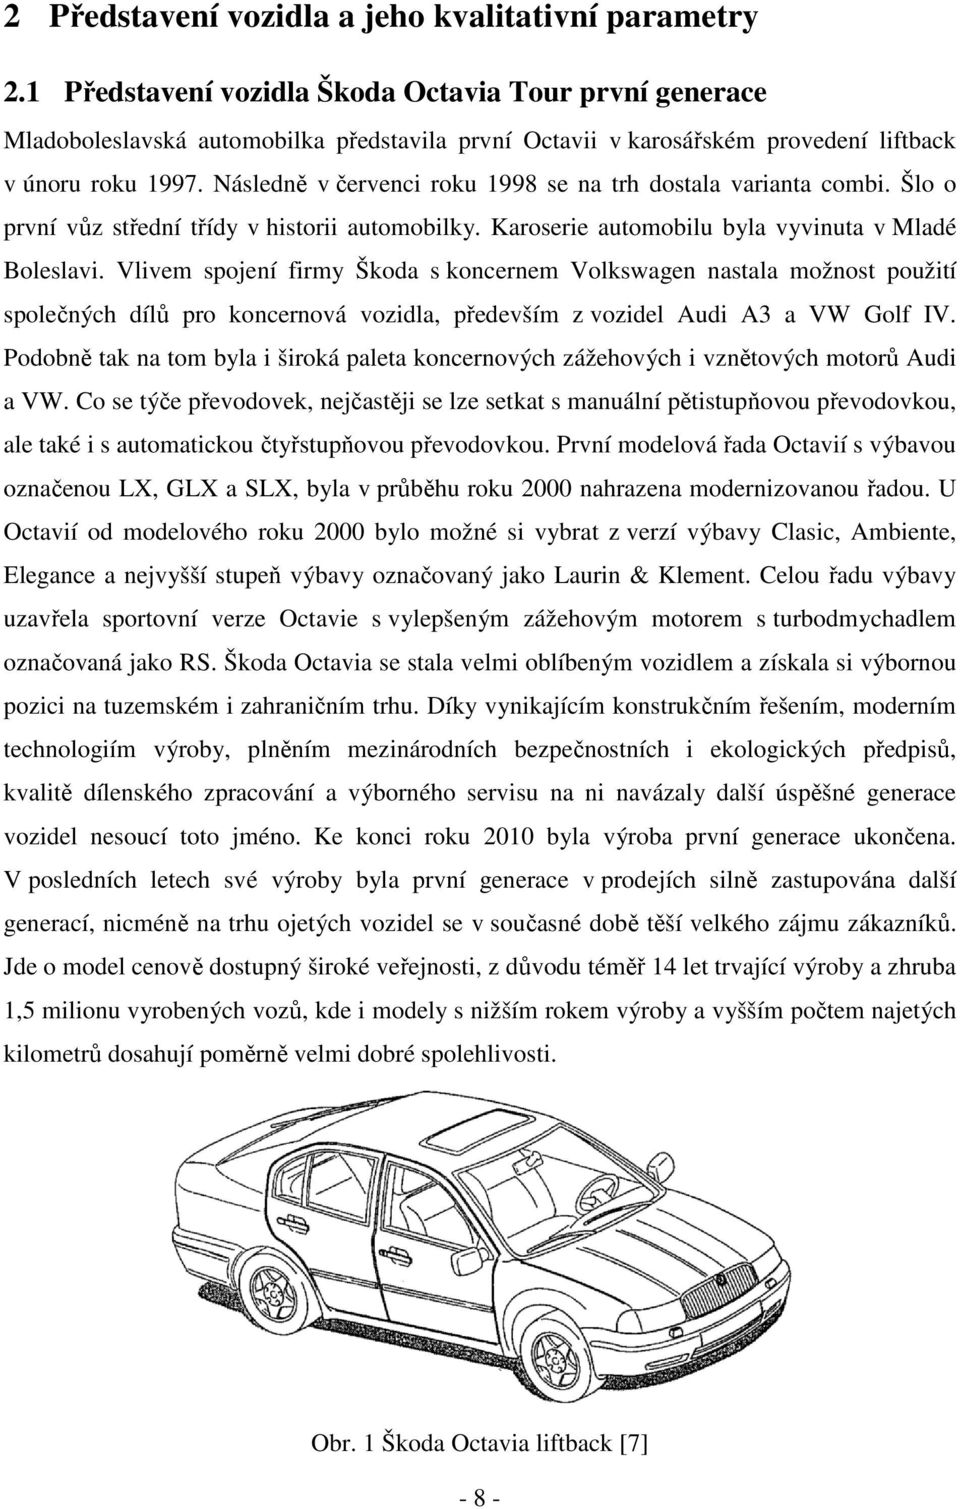 Následně v červenci roku 1998 se na trh dostala varianta combi. Šlo o první vůz střední třídy v historii automobilky. Karoserie automobilu byla vyvinuta v Mladé Boleslavi.